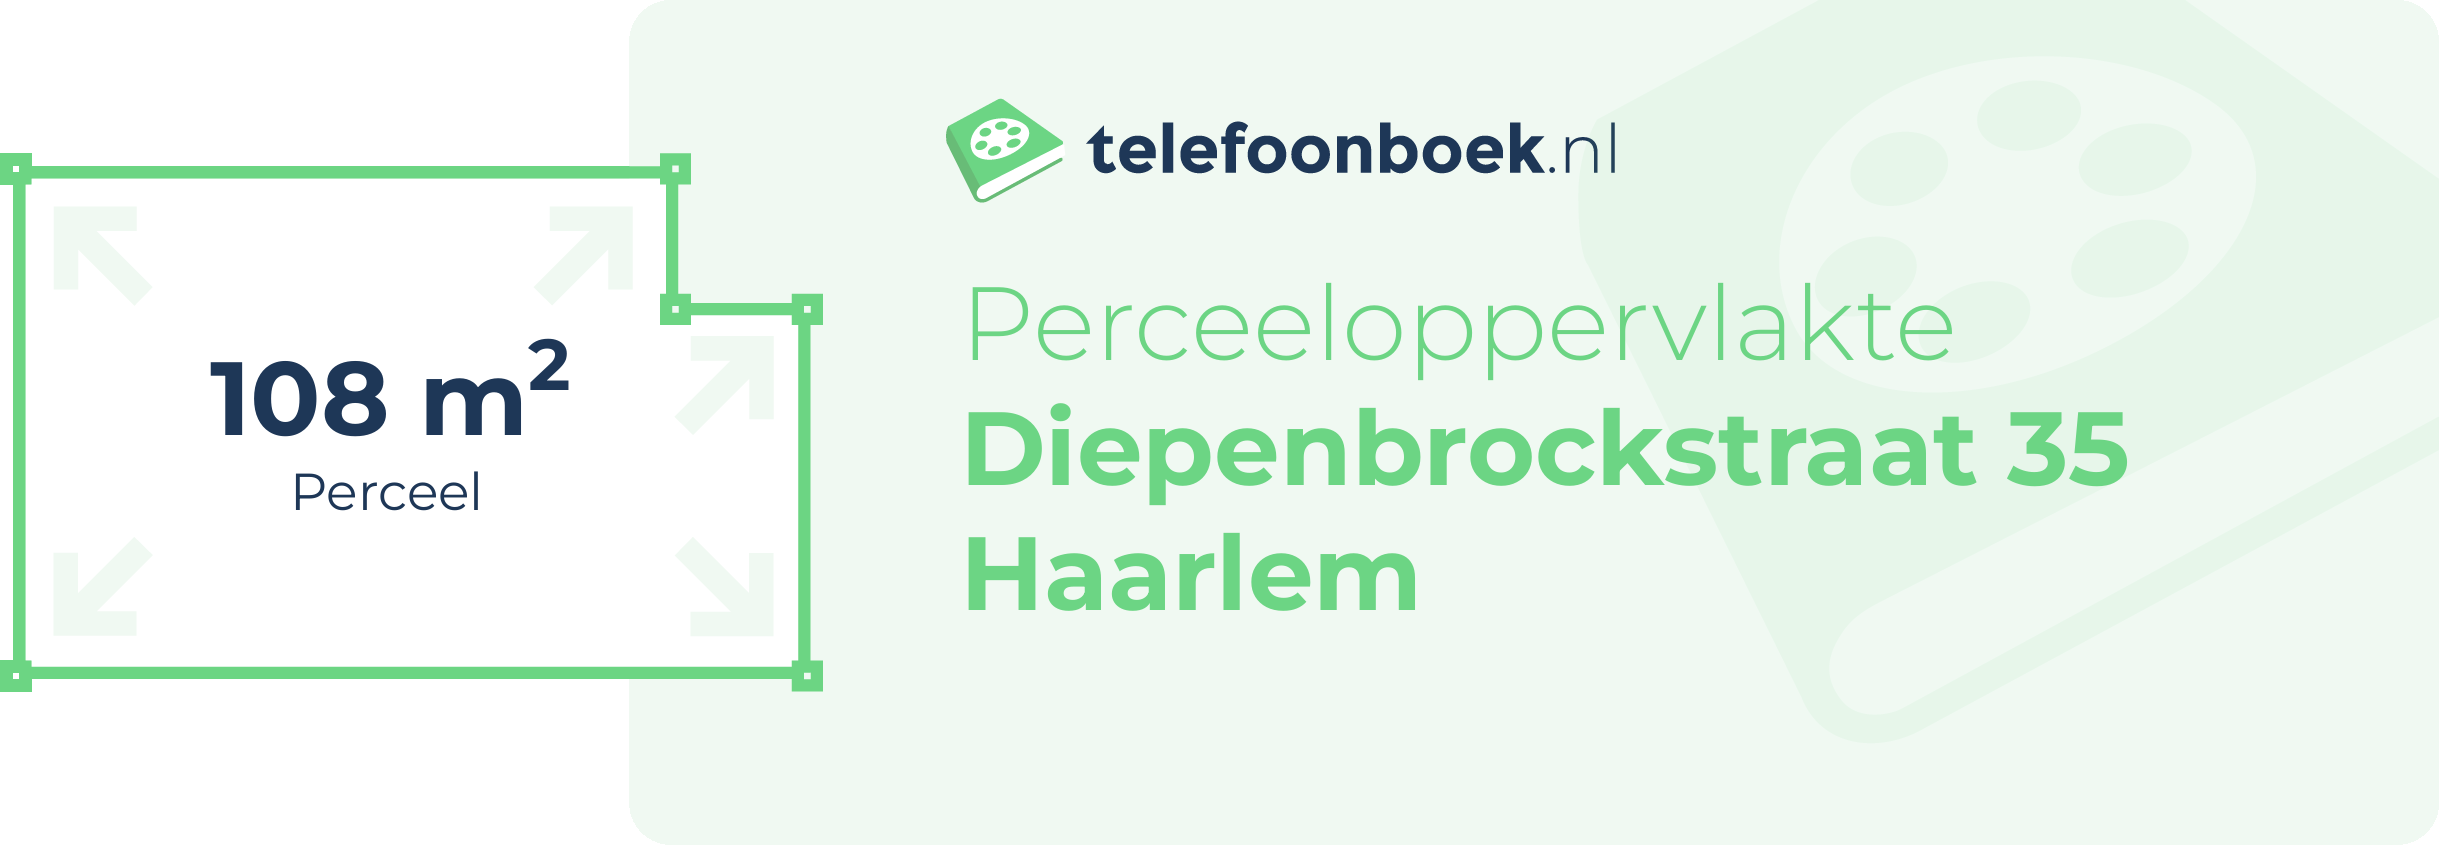 Perceeloppervlakte Diepenbrockstraat 35 Haarlem